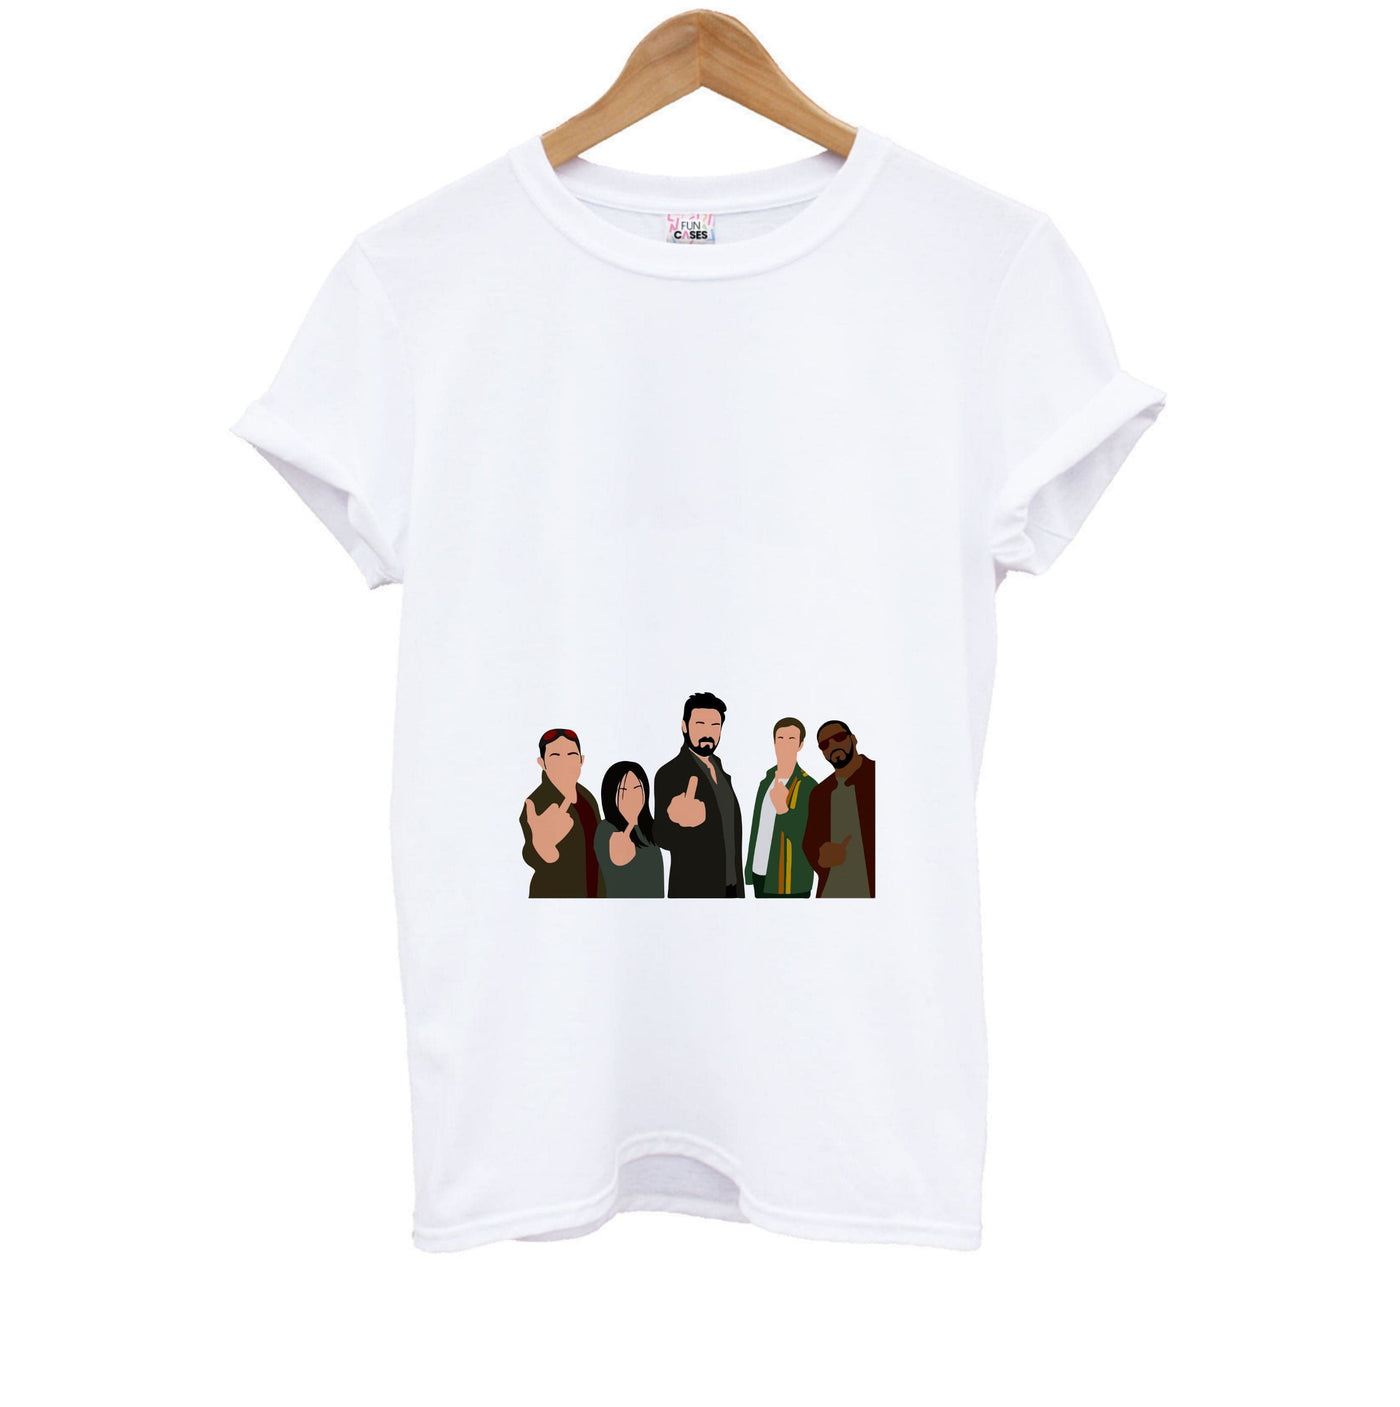 The Boys Kids T-Shirt